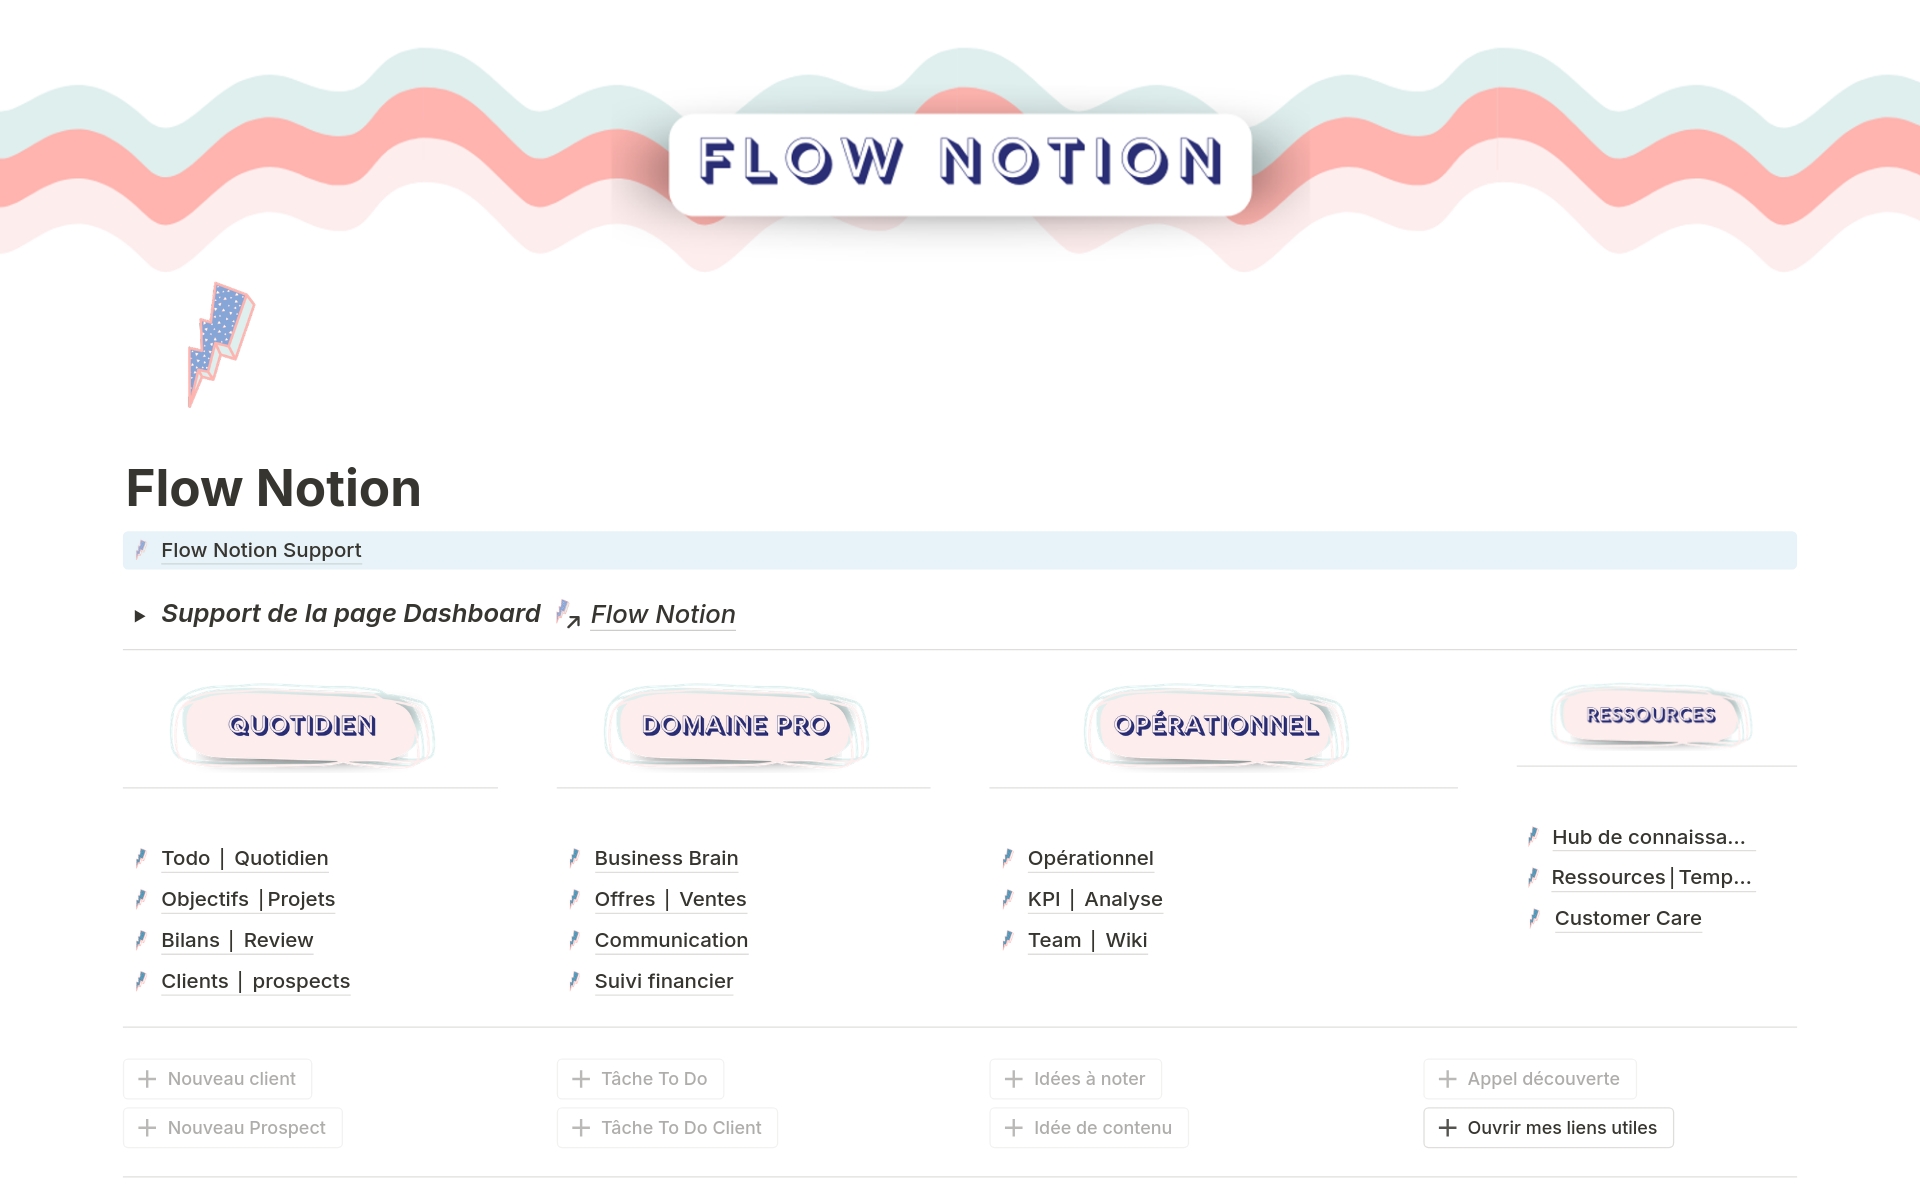 En forhåndsvisning av mal for Flow Notion - Pilotage Business